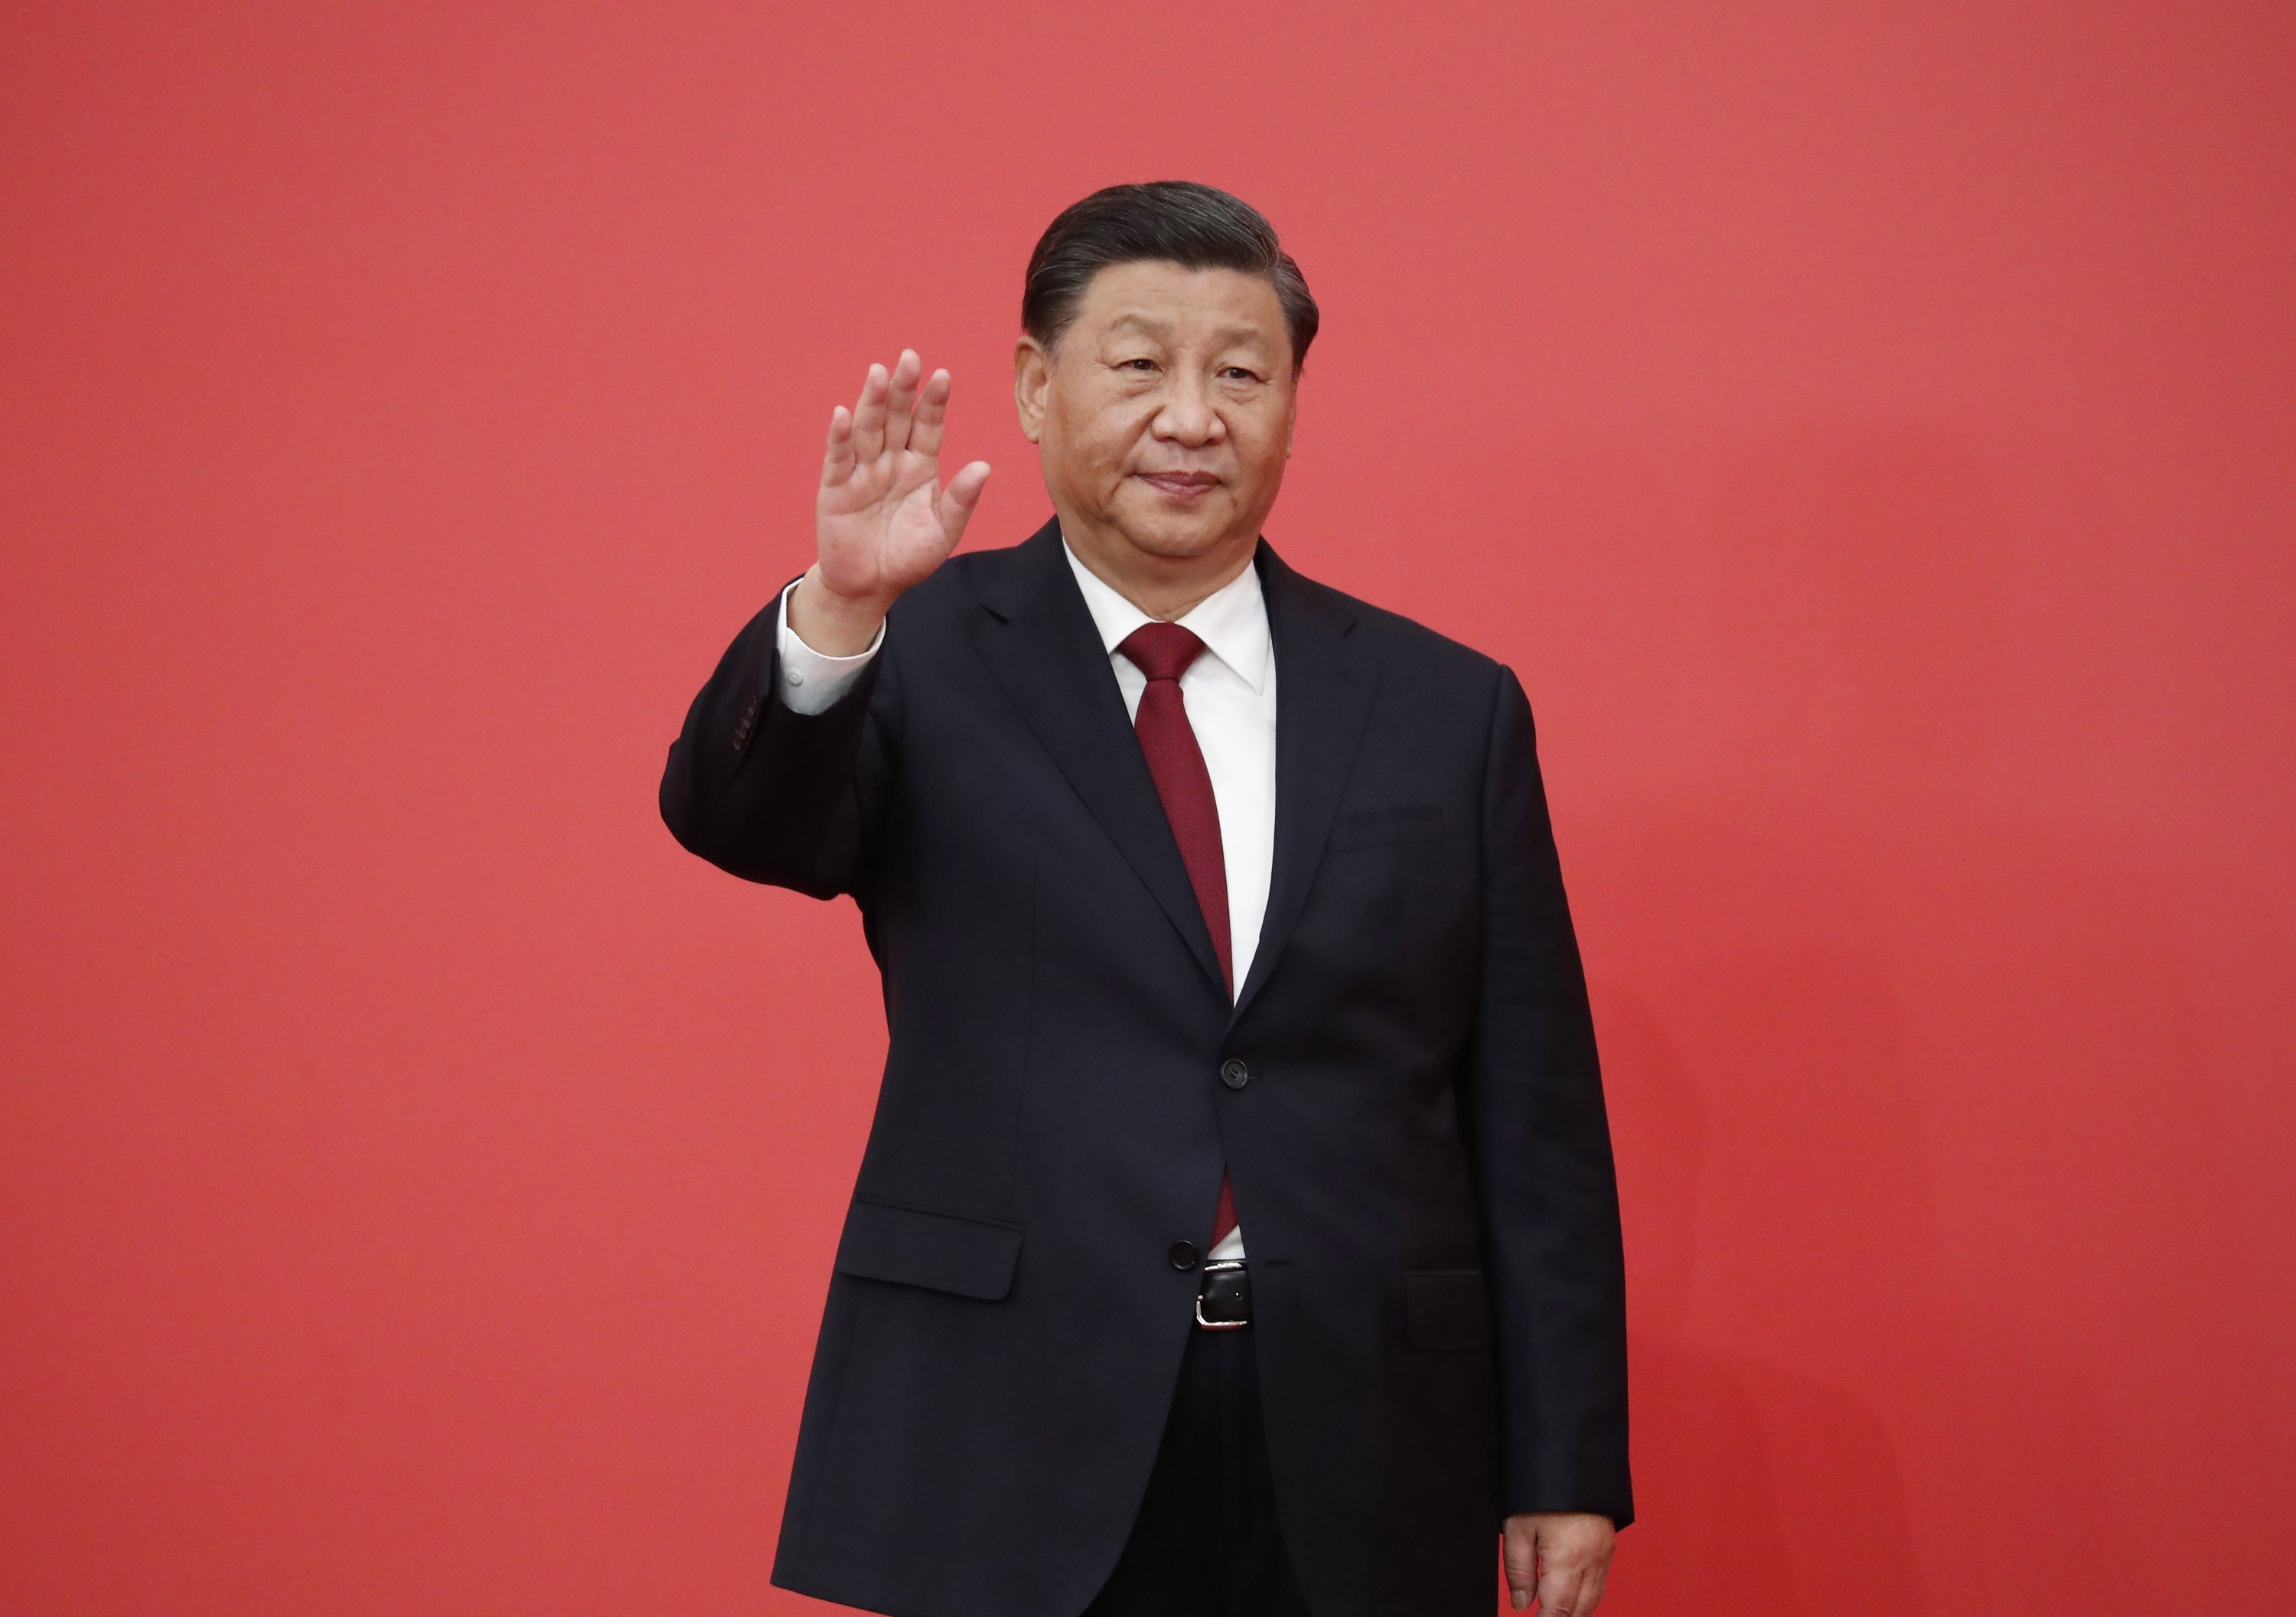 El puny de ferro de Xi Jinping i una gran humiliació a les portades